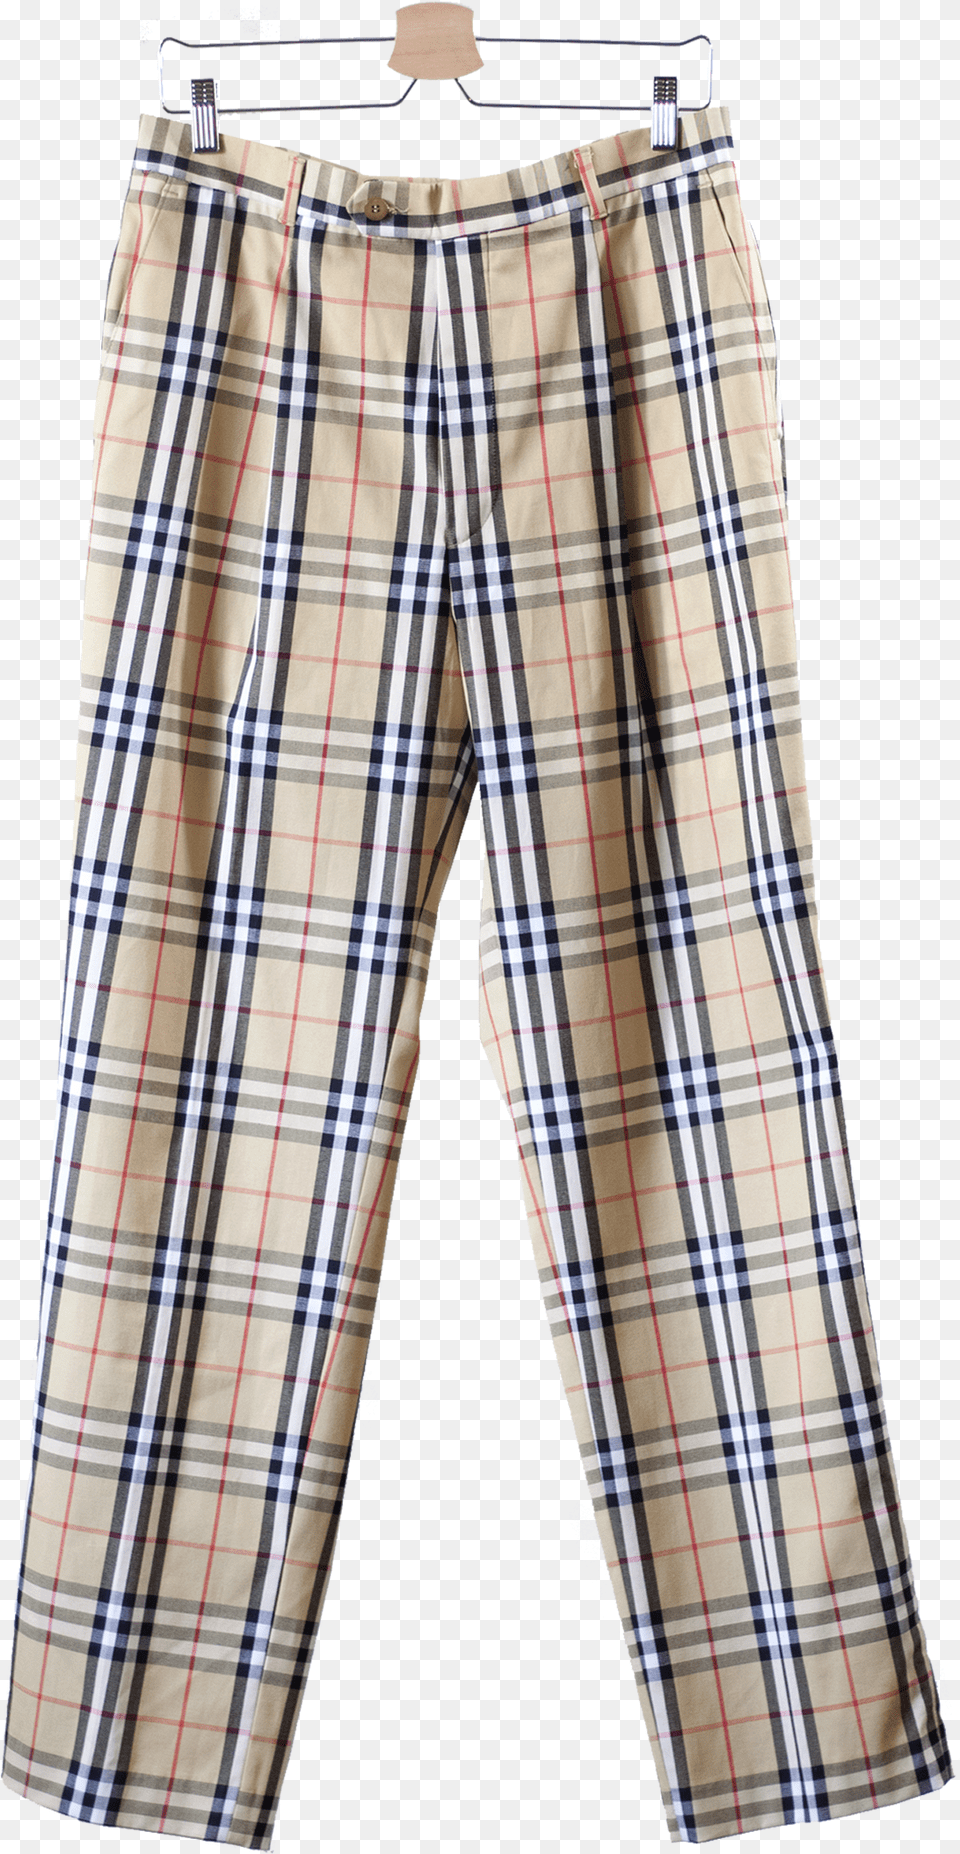 Gents Pant Shirt, Clothing, Shorts Png Image